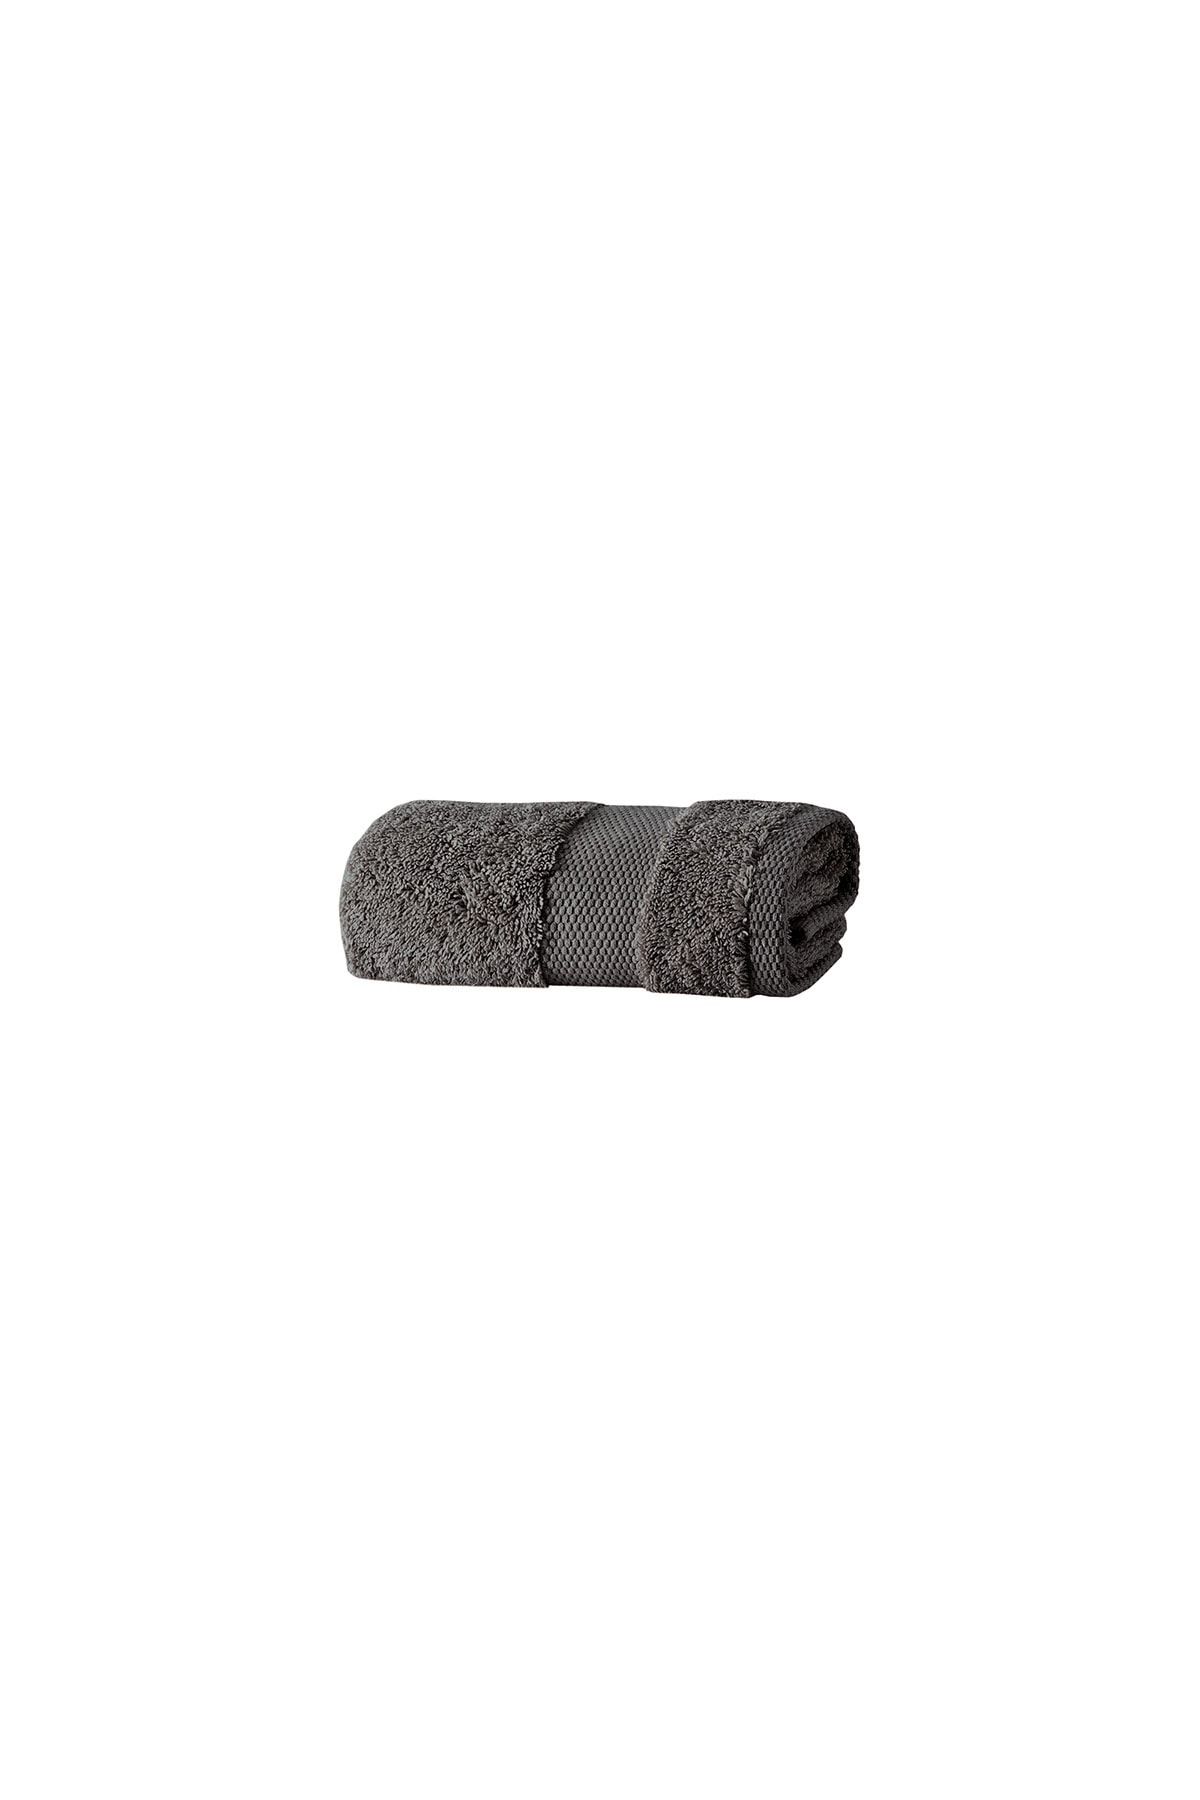 Yataş Bedding Essentials El Havlusu - Antrasit (50x90 Cm)